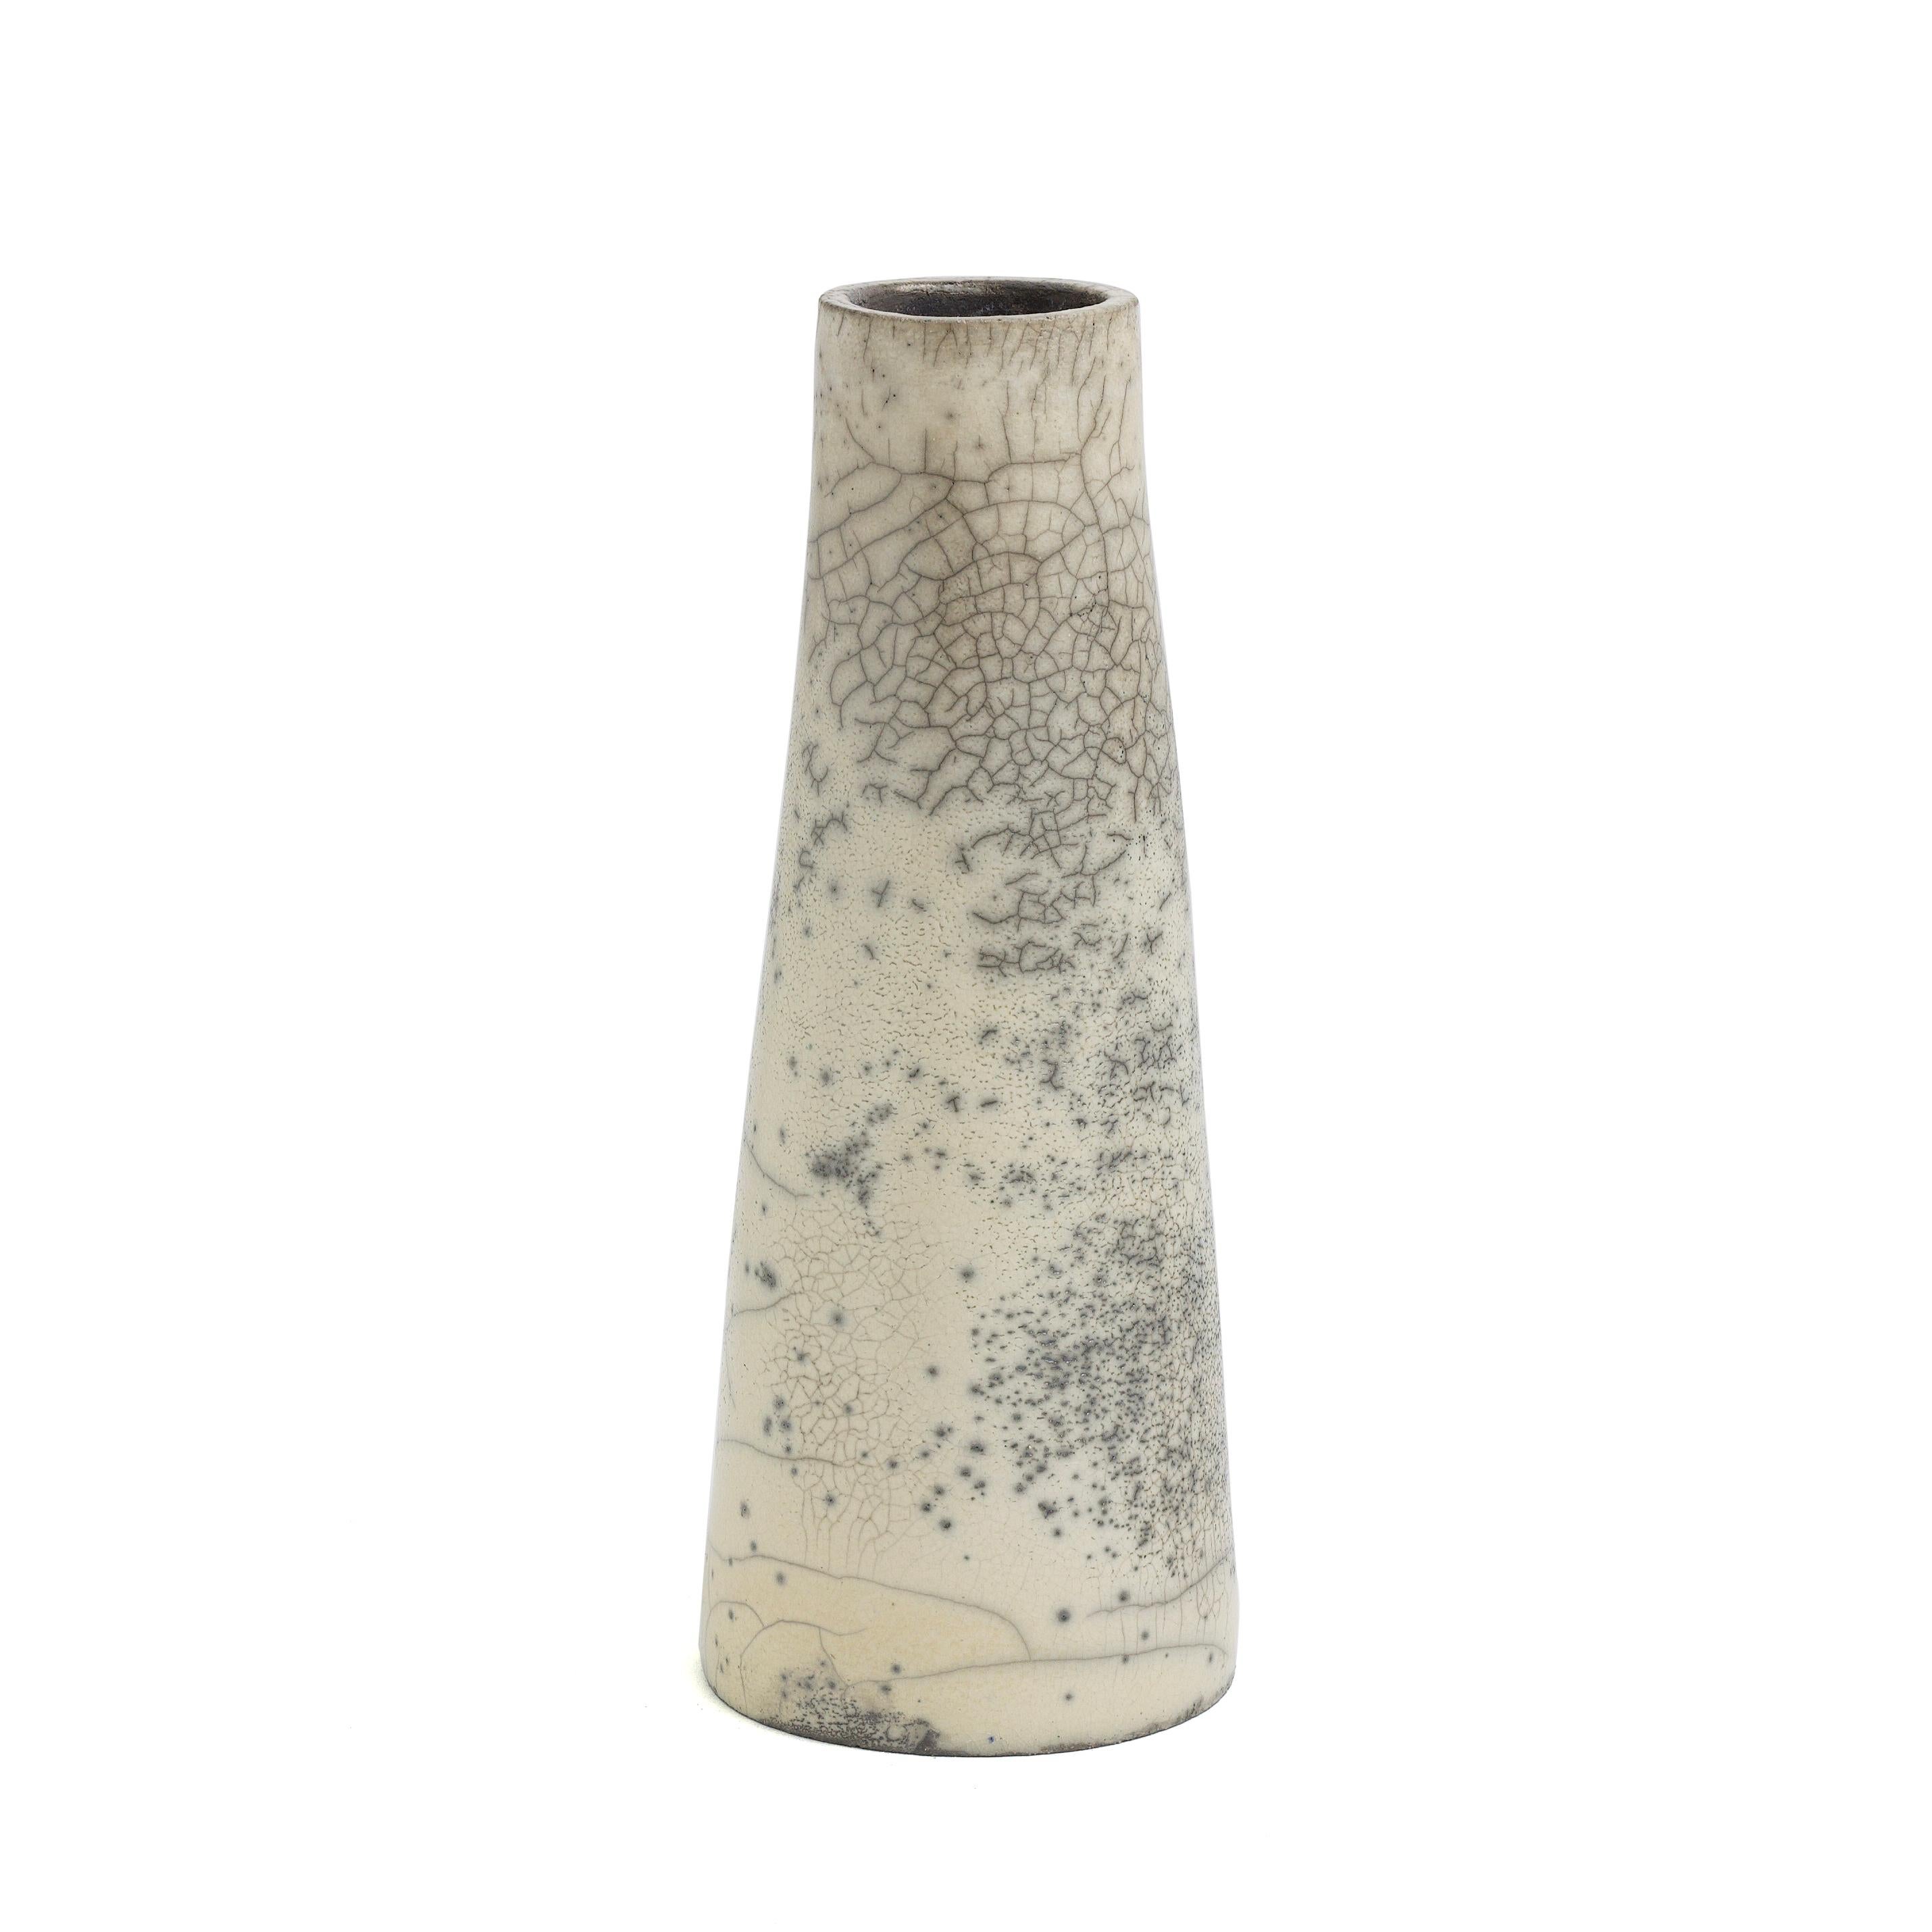 Hana Vertikal 4

Eine Hana-Vase, natürlich gefärbt, mit einer glatten Oberfläche, die elegant mit Crakle' verziert ist, was die harmonische Vertikalität des Stücks unterstreicht. Mit einer Seite viel dichter von diesem Effekt, der ein Ergebnis der